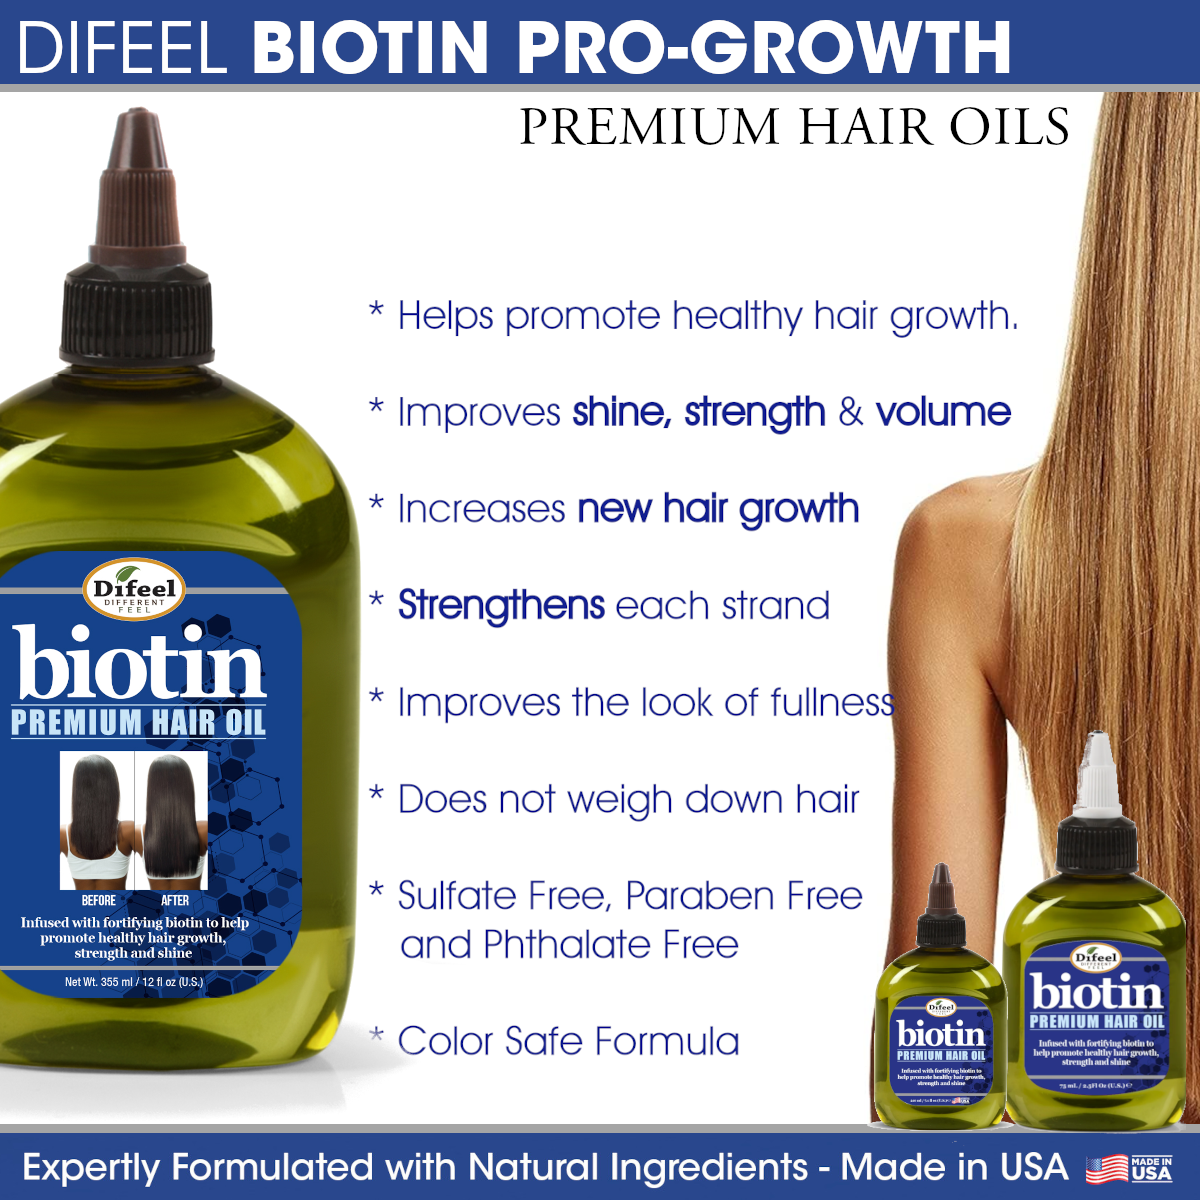 Difeel Biotin Pro-Growth Hair Mask 12 oz. with Biotin Hair Oil 7.1 oz. (2-Piece Set)